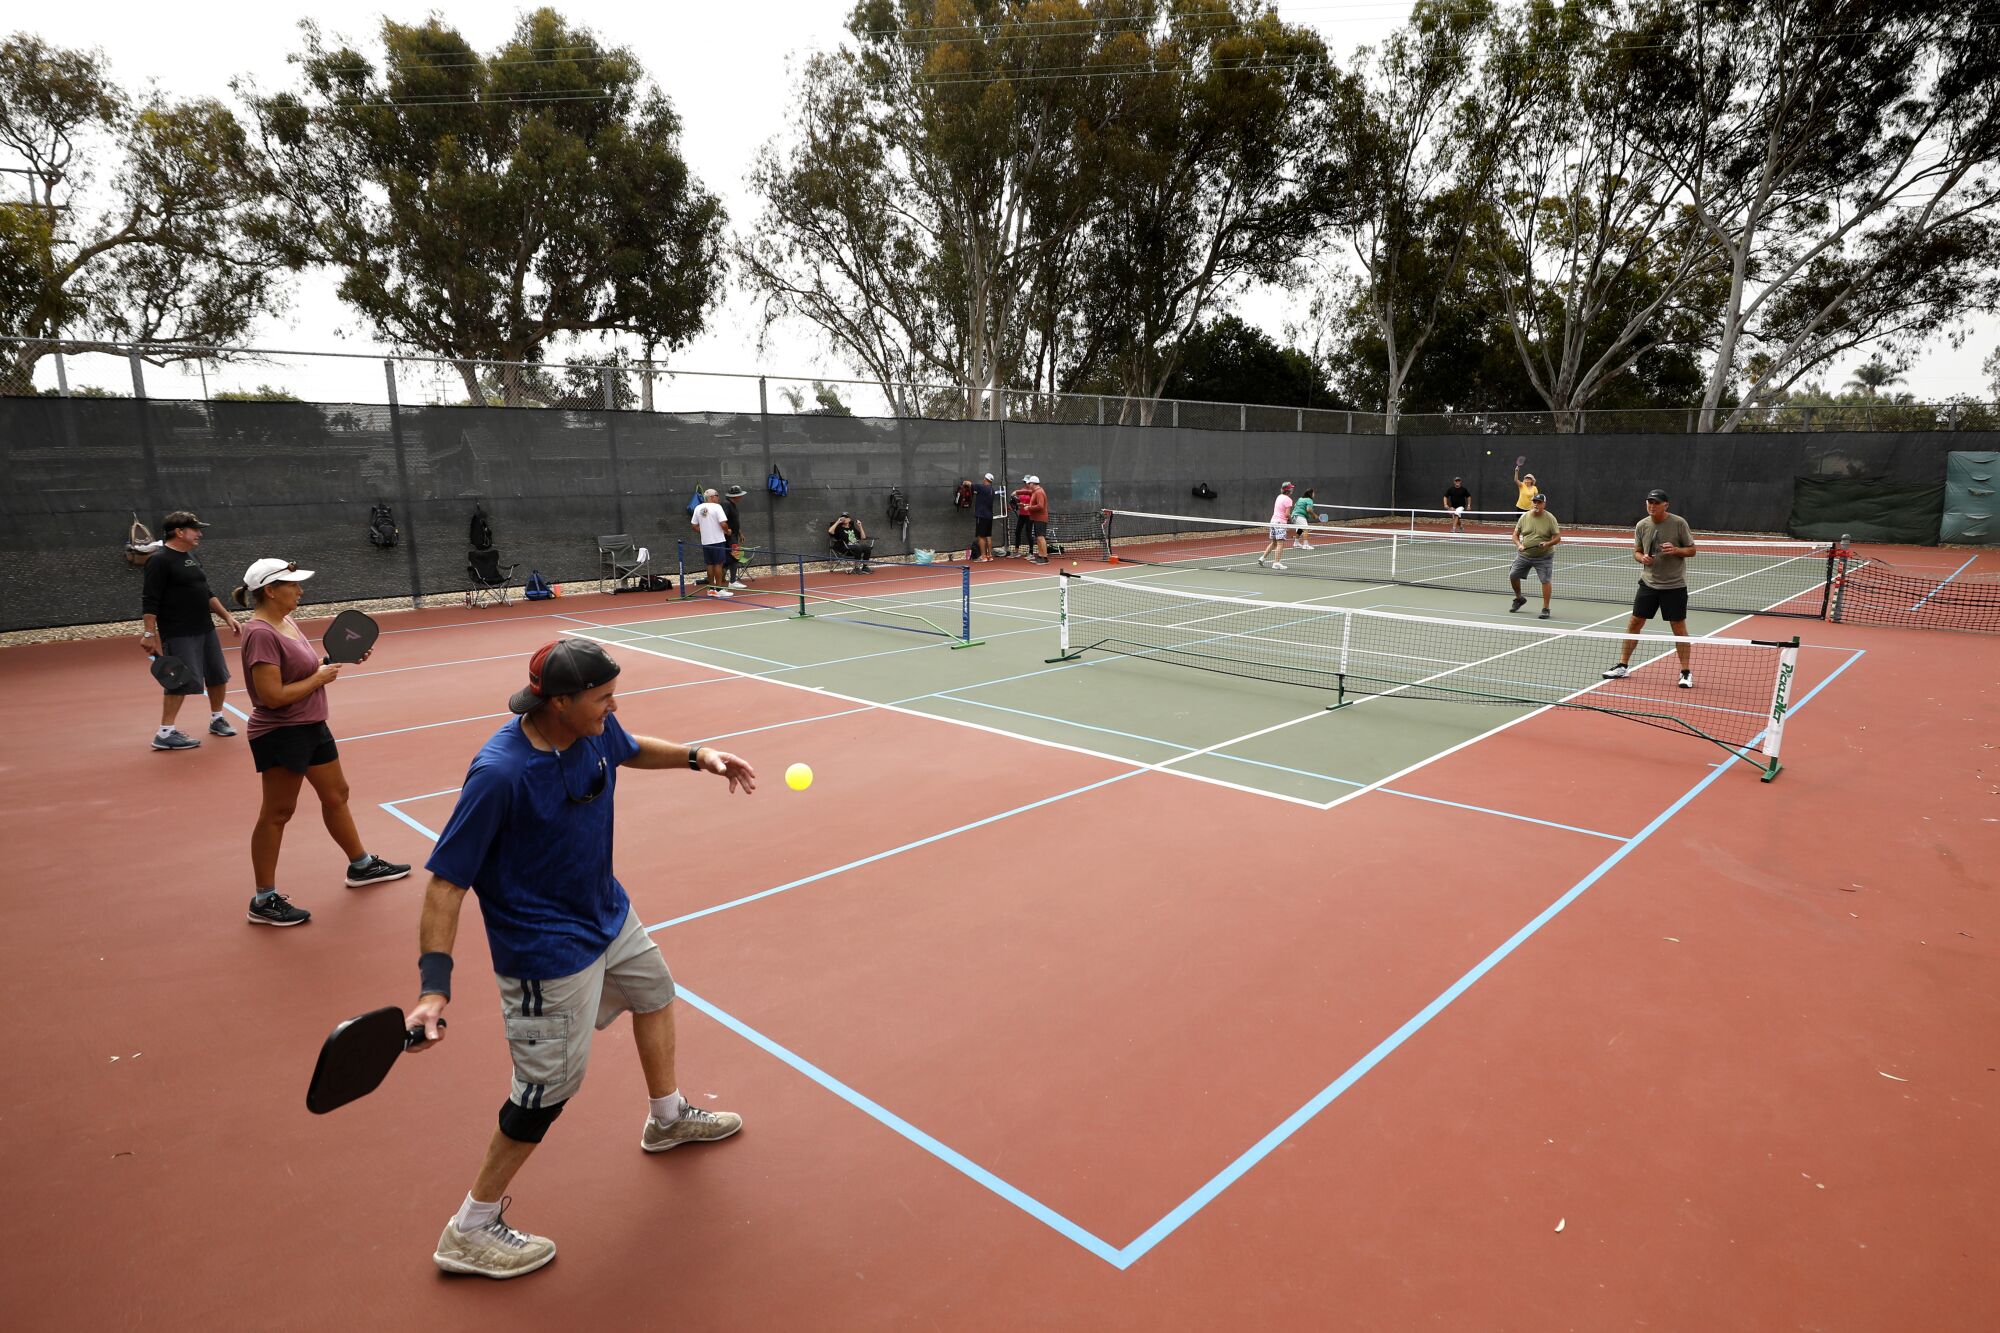 Turf war heating up between tennis, pickleball in San Diego The San